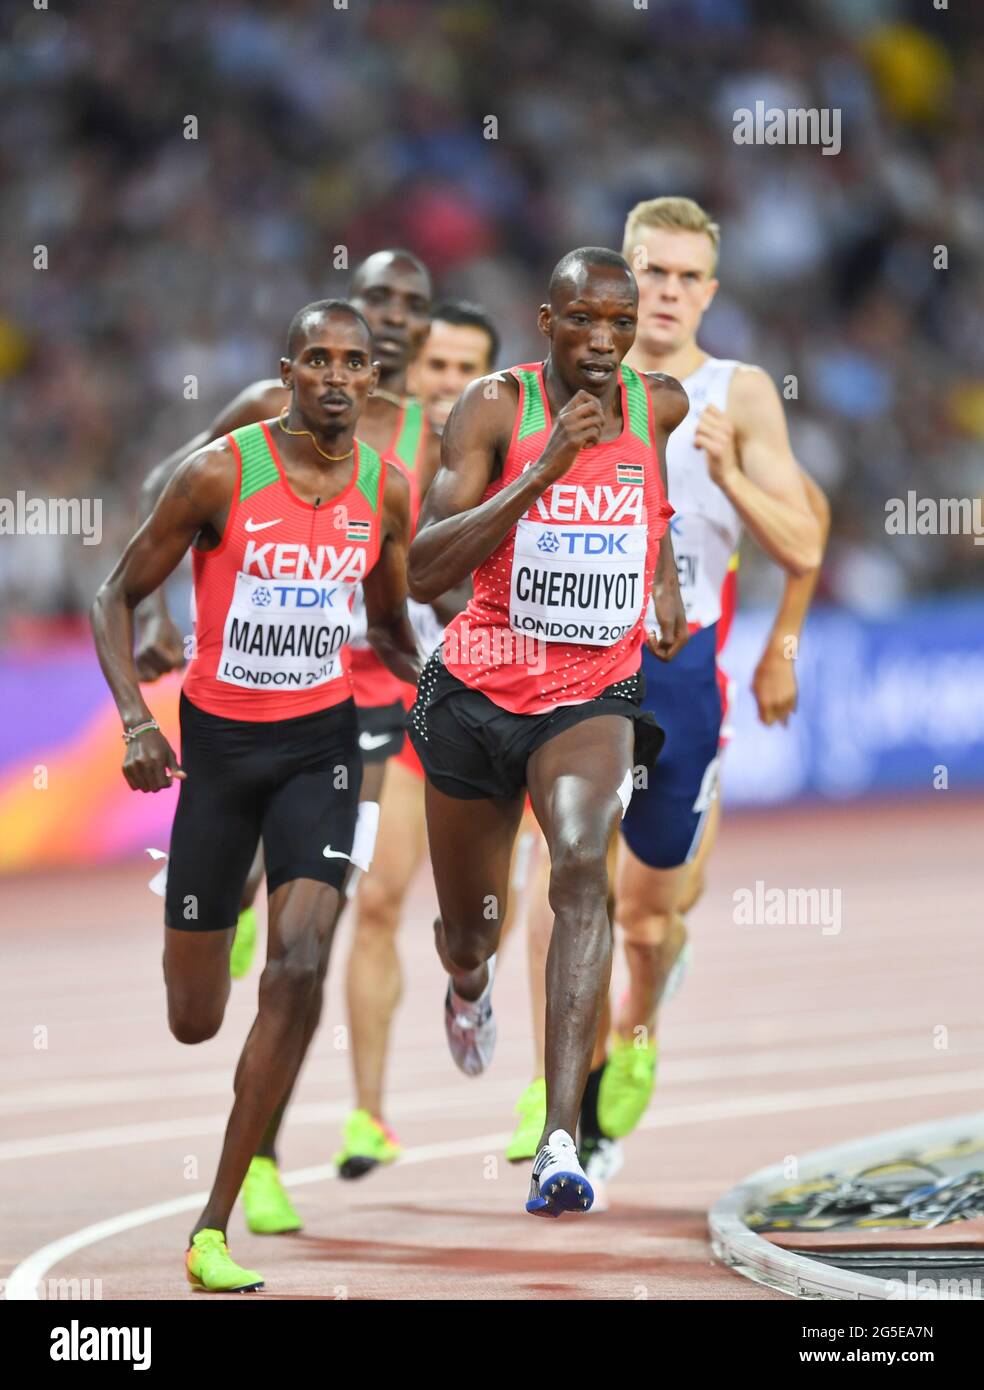 Les athlètes kenyans Timothy Cheruiyot (médaille d'argent) et Elijah Motonei Manangoi (médaille d'or). 1500 mètres de finale. Championnats du monde de l'IAAF Londres 2017 Banque D'Images